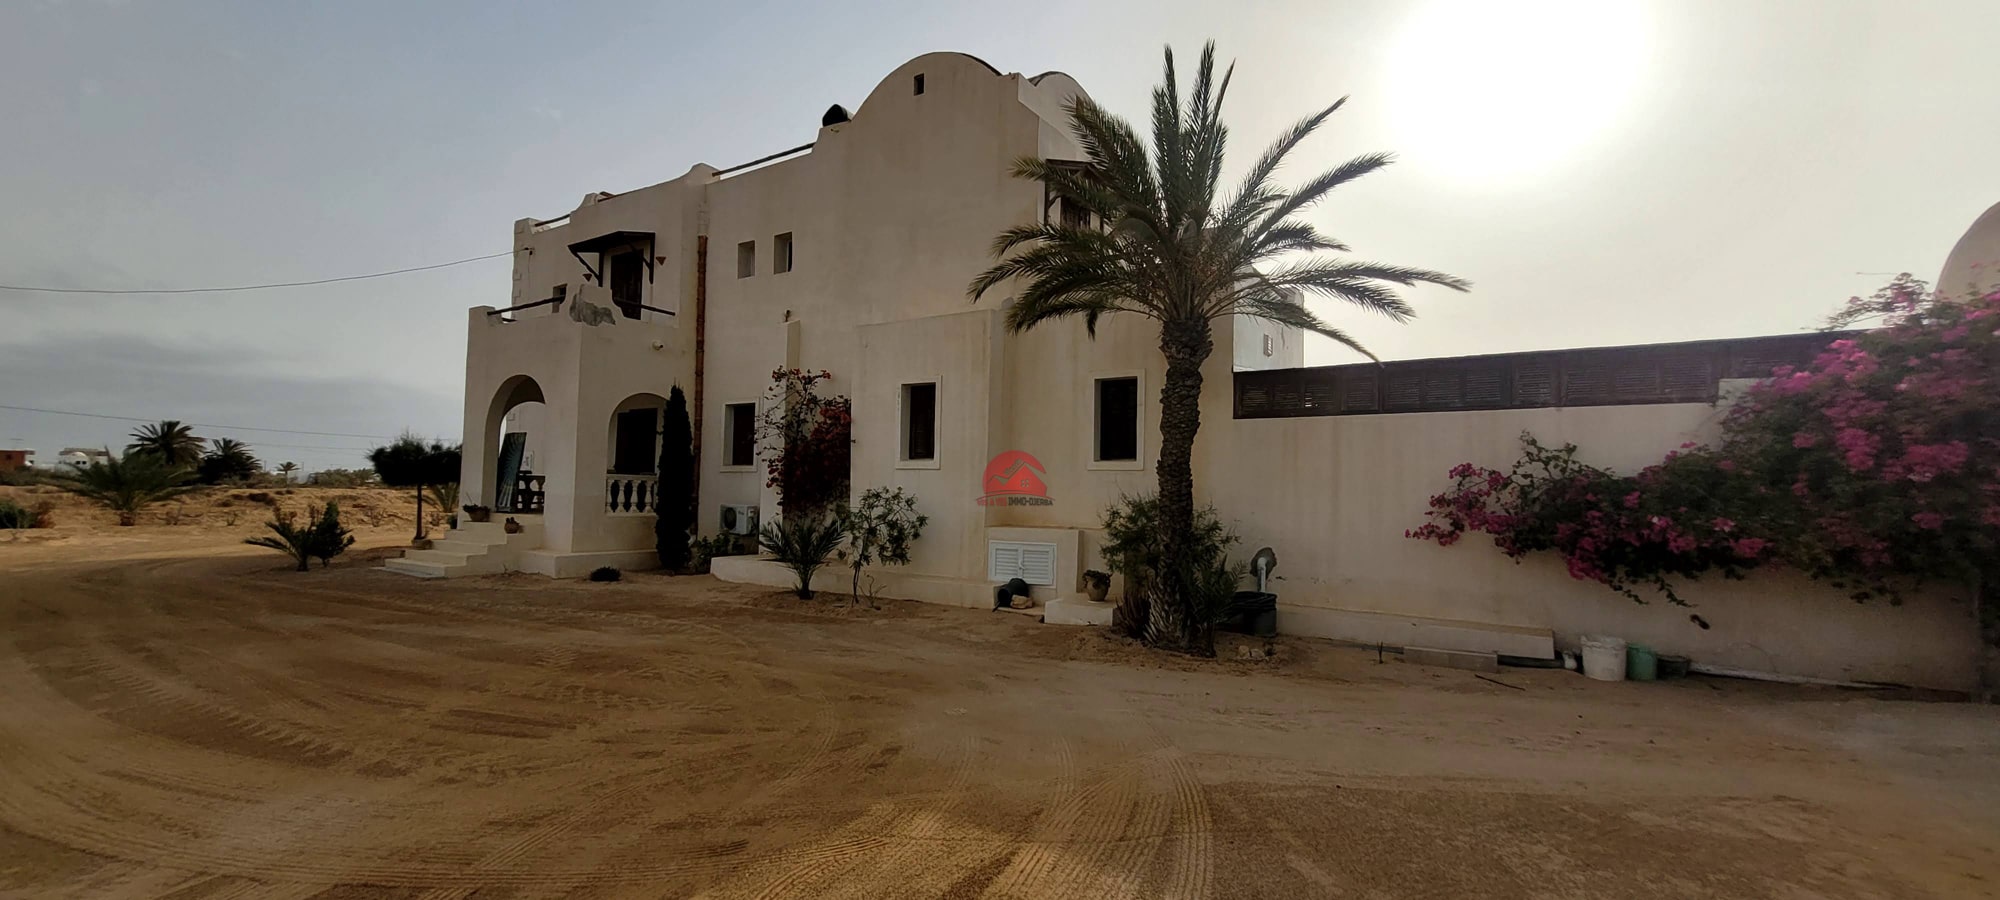 Djerba - Houmet Essouk Djerba  Vente Maisons Belle villa meublee a sidi jmour djerba  ref v654